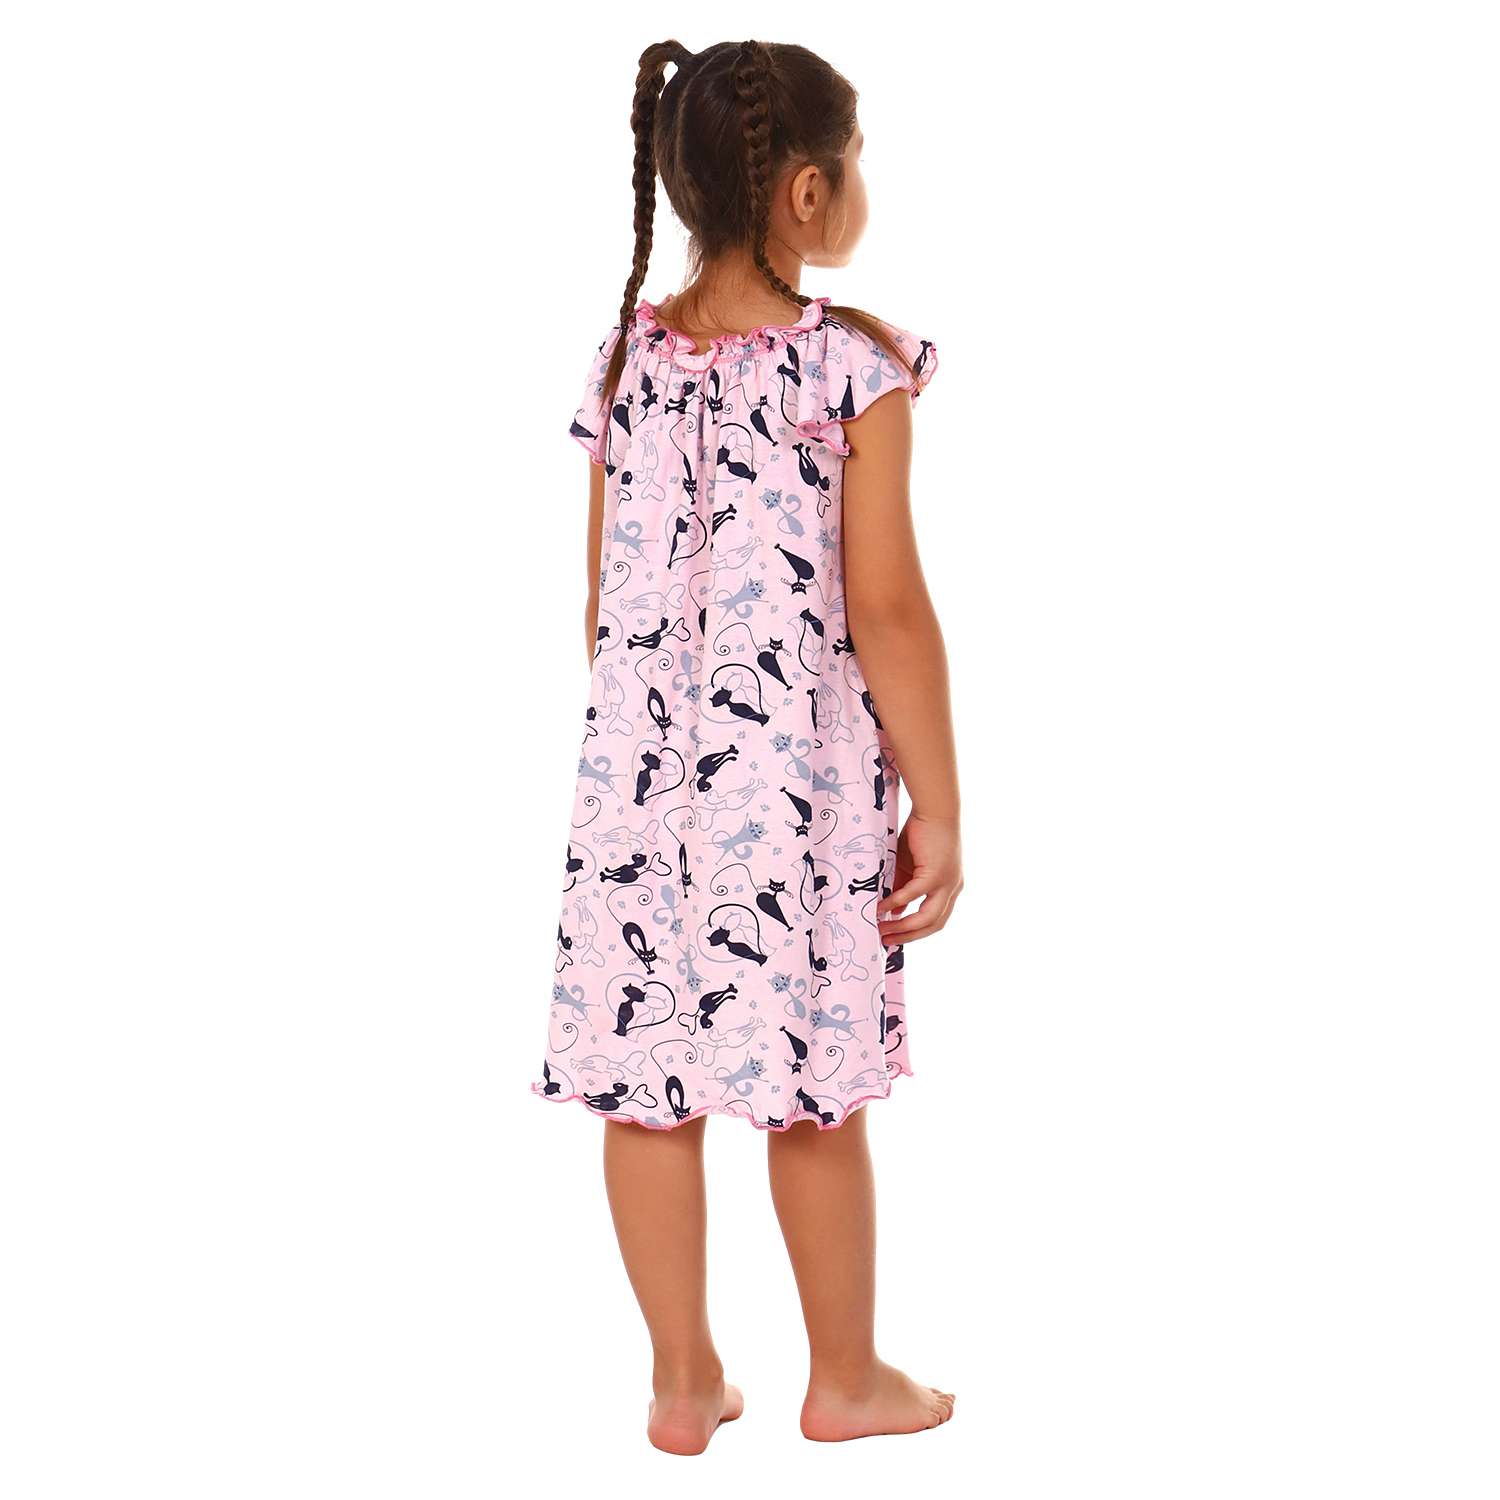 Сорочка ночная Детская Одежда 0003К/розовый - фото 4